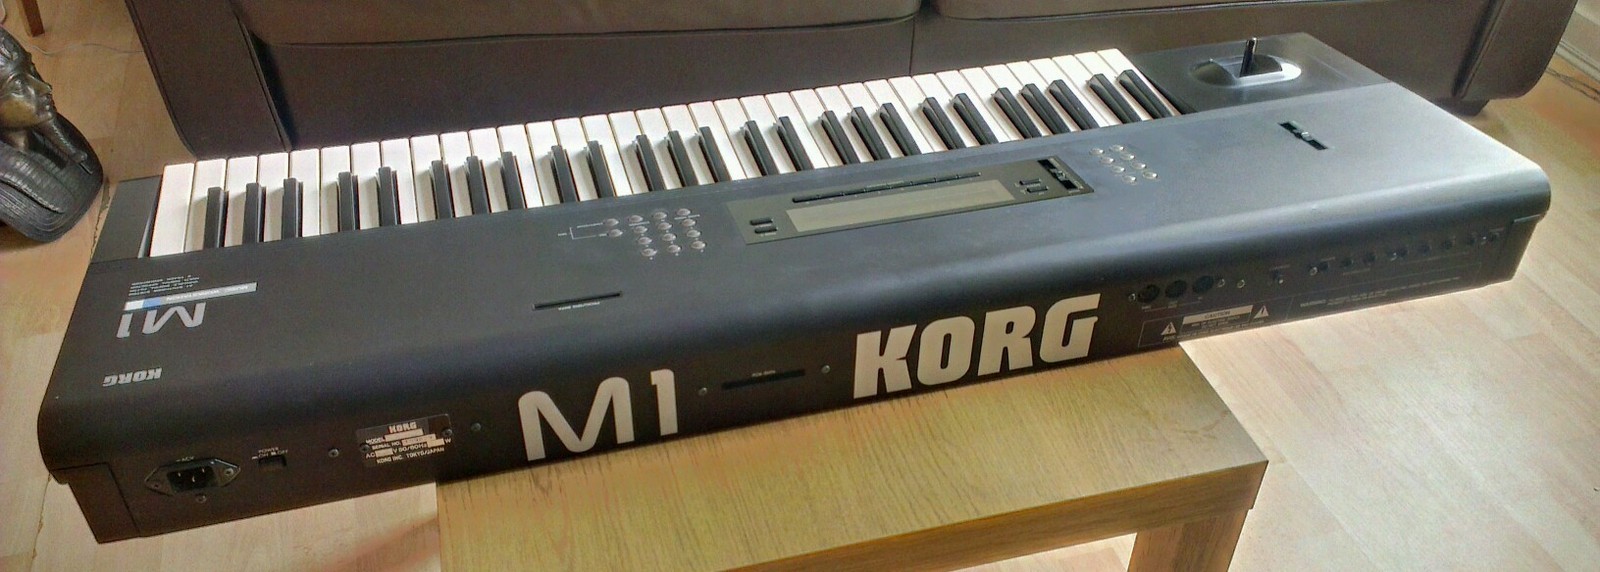 teclado korg m1